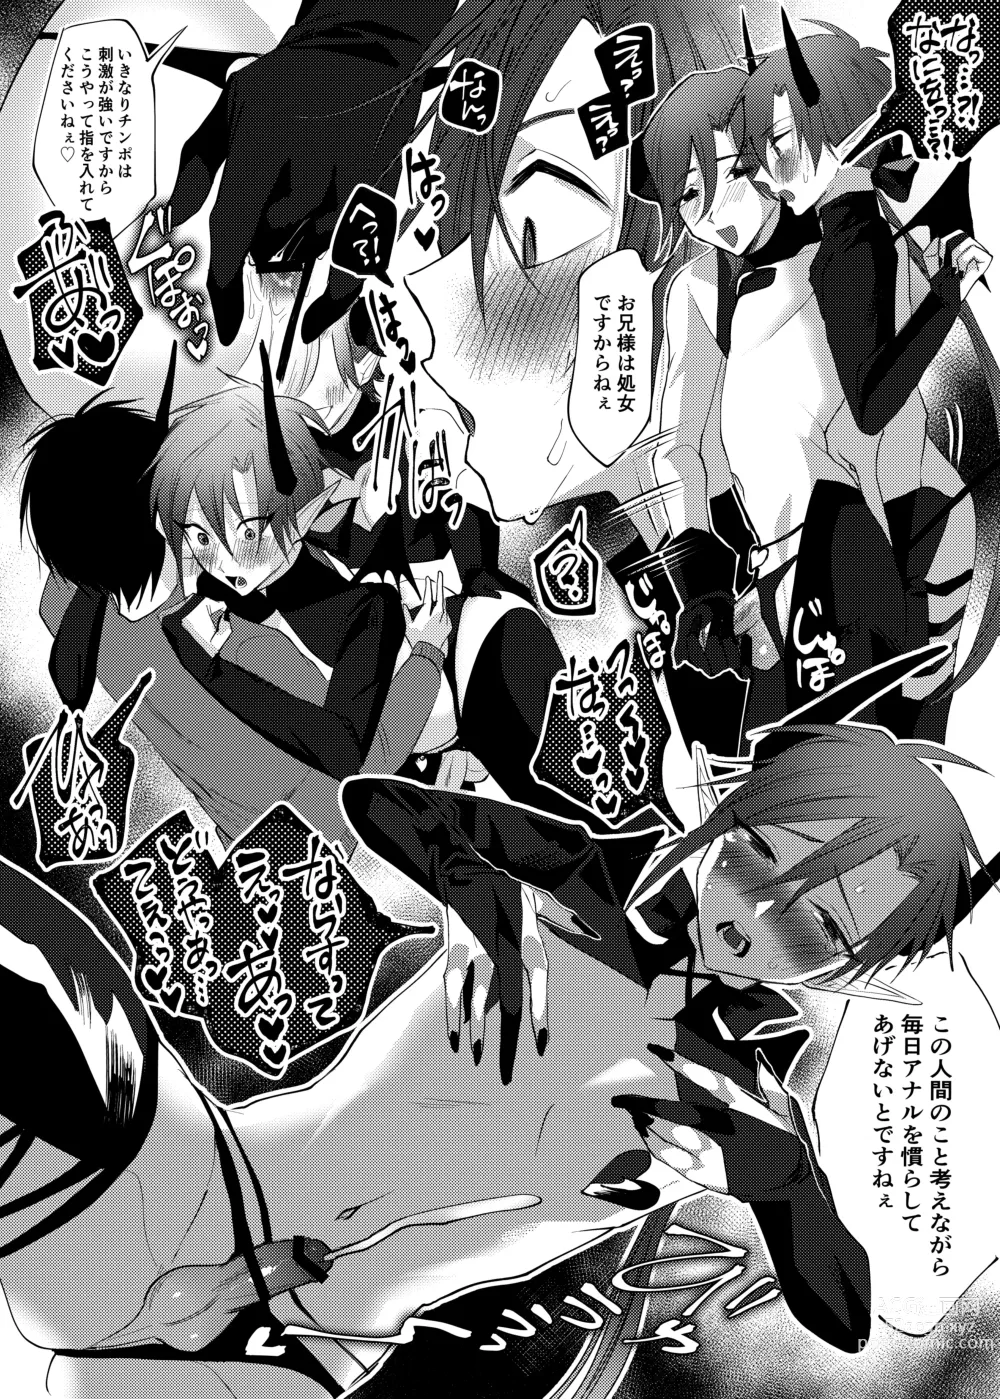 Page 61 of doujinshi Orenchi ni, Ero Sugiru Inma 4 Kyoudai ga Sumitsuiteru Ken.